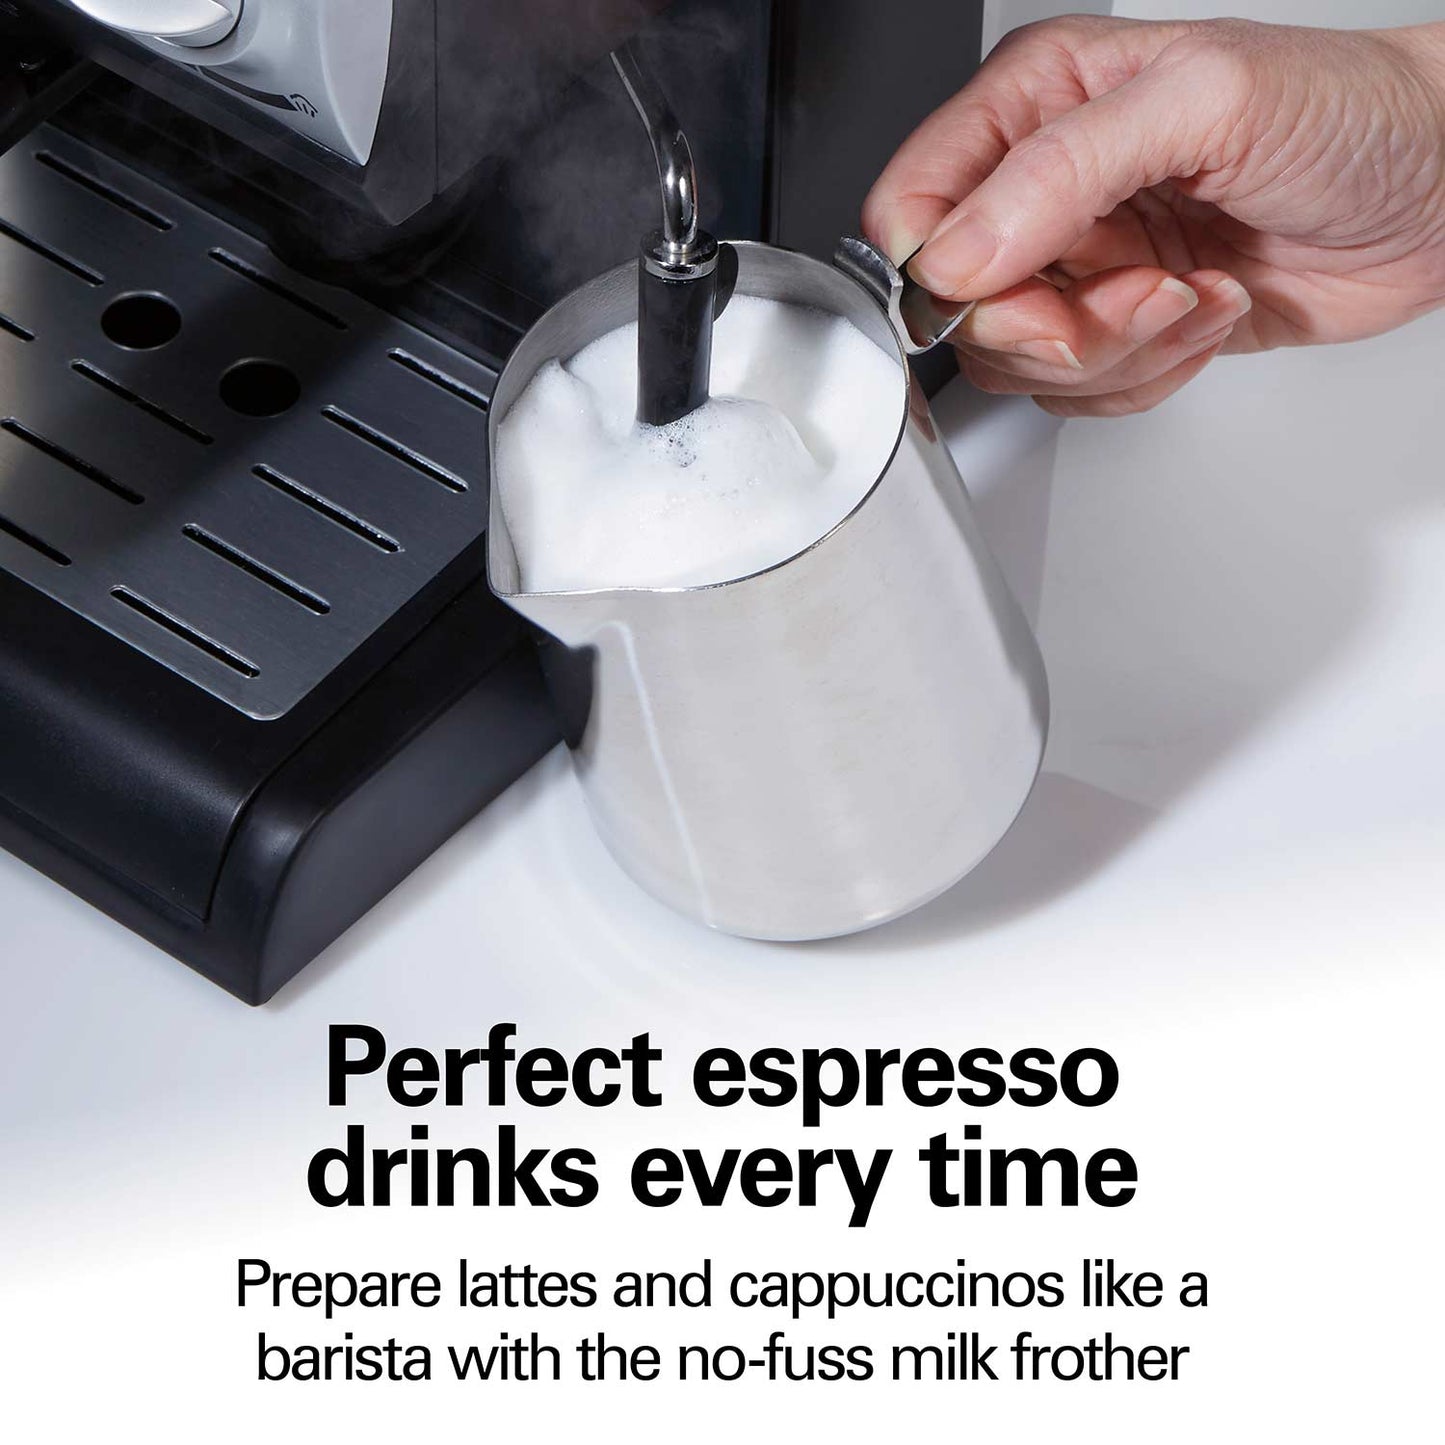 Espresso and Cappuccino Maker